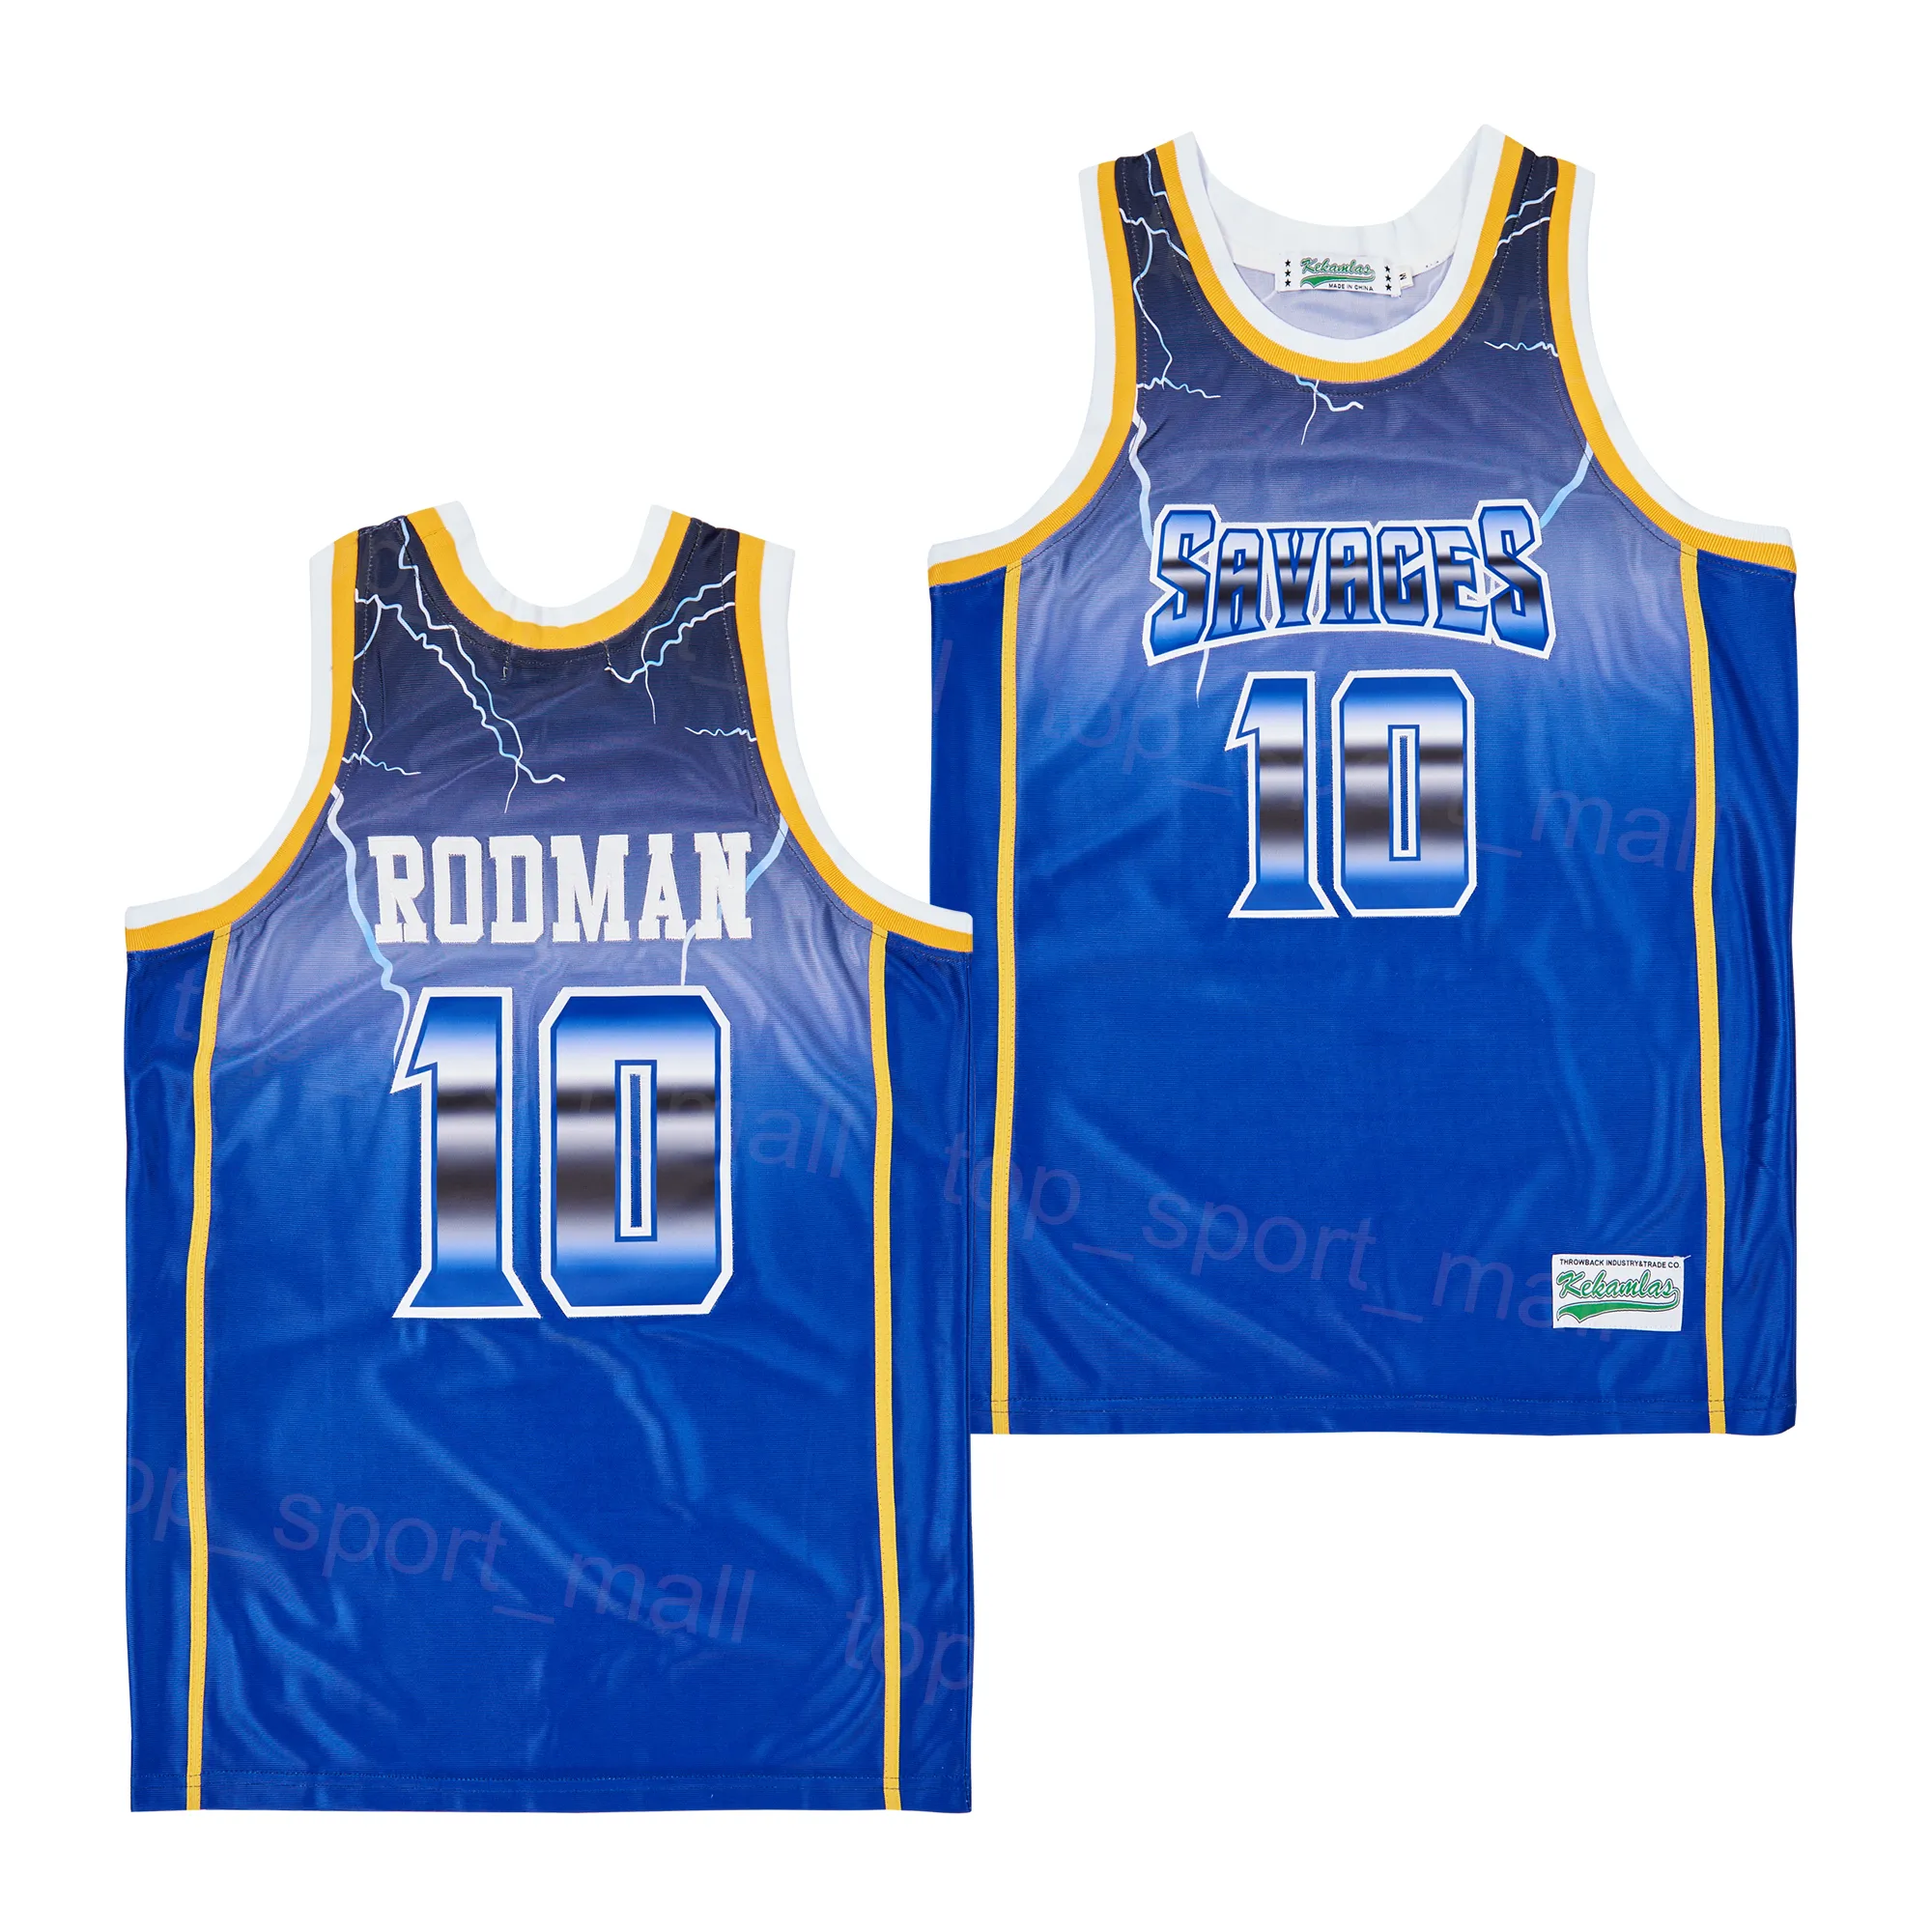 Movie Basketball Dennis Rodman Jersey 10 Fruytful Saynges of David Summer HipHop High School Embroidery University For Sport Fans Vintage Team Color Blue Shirt